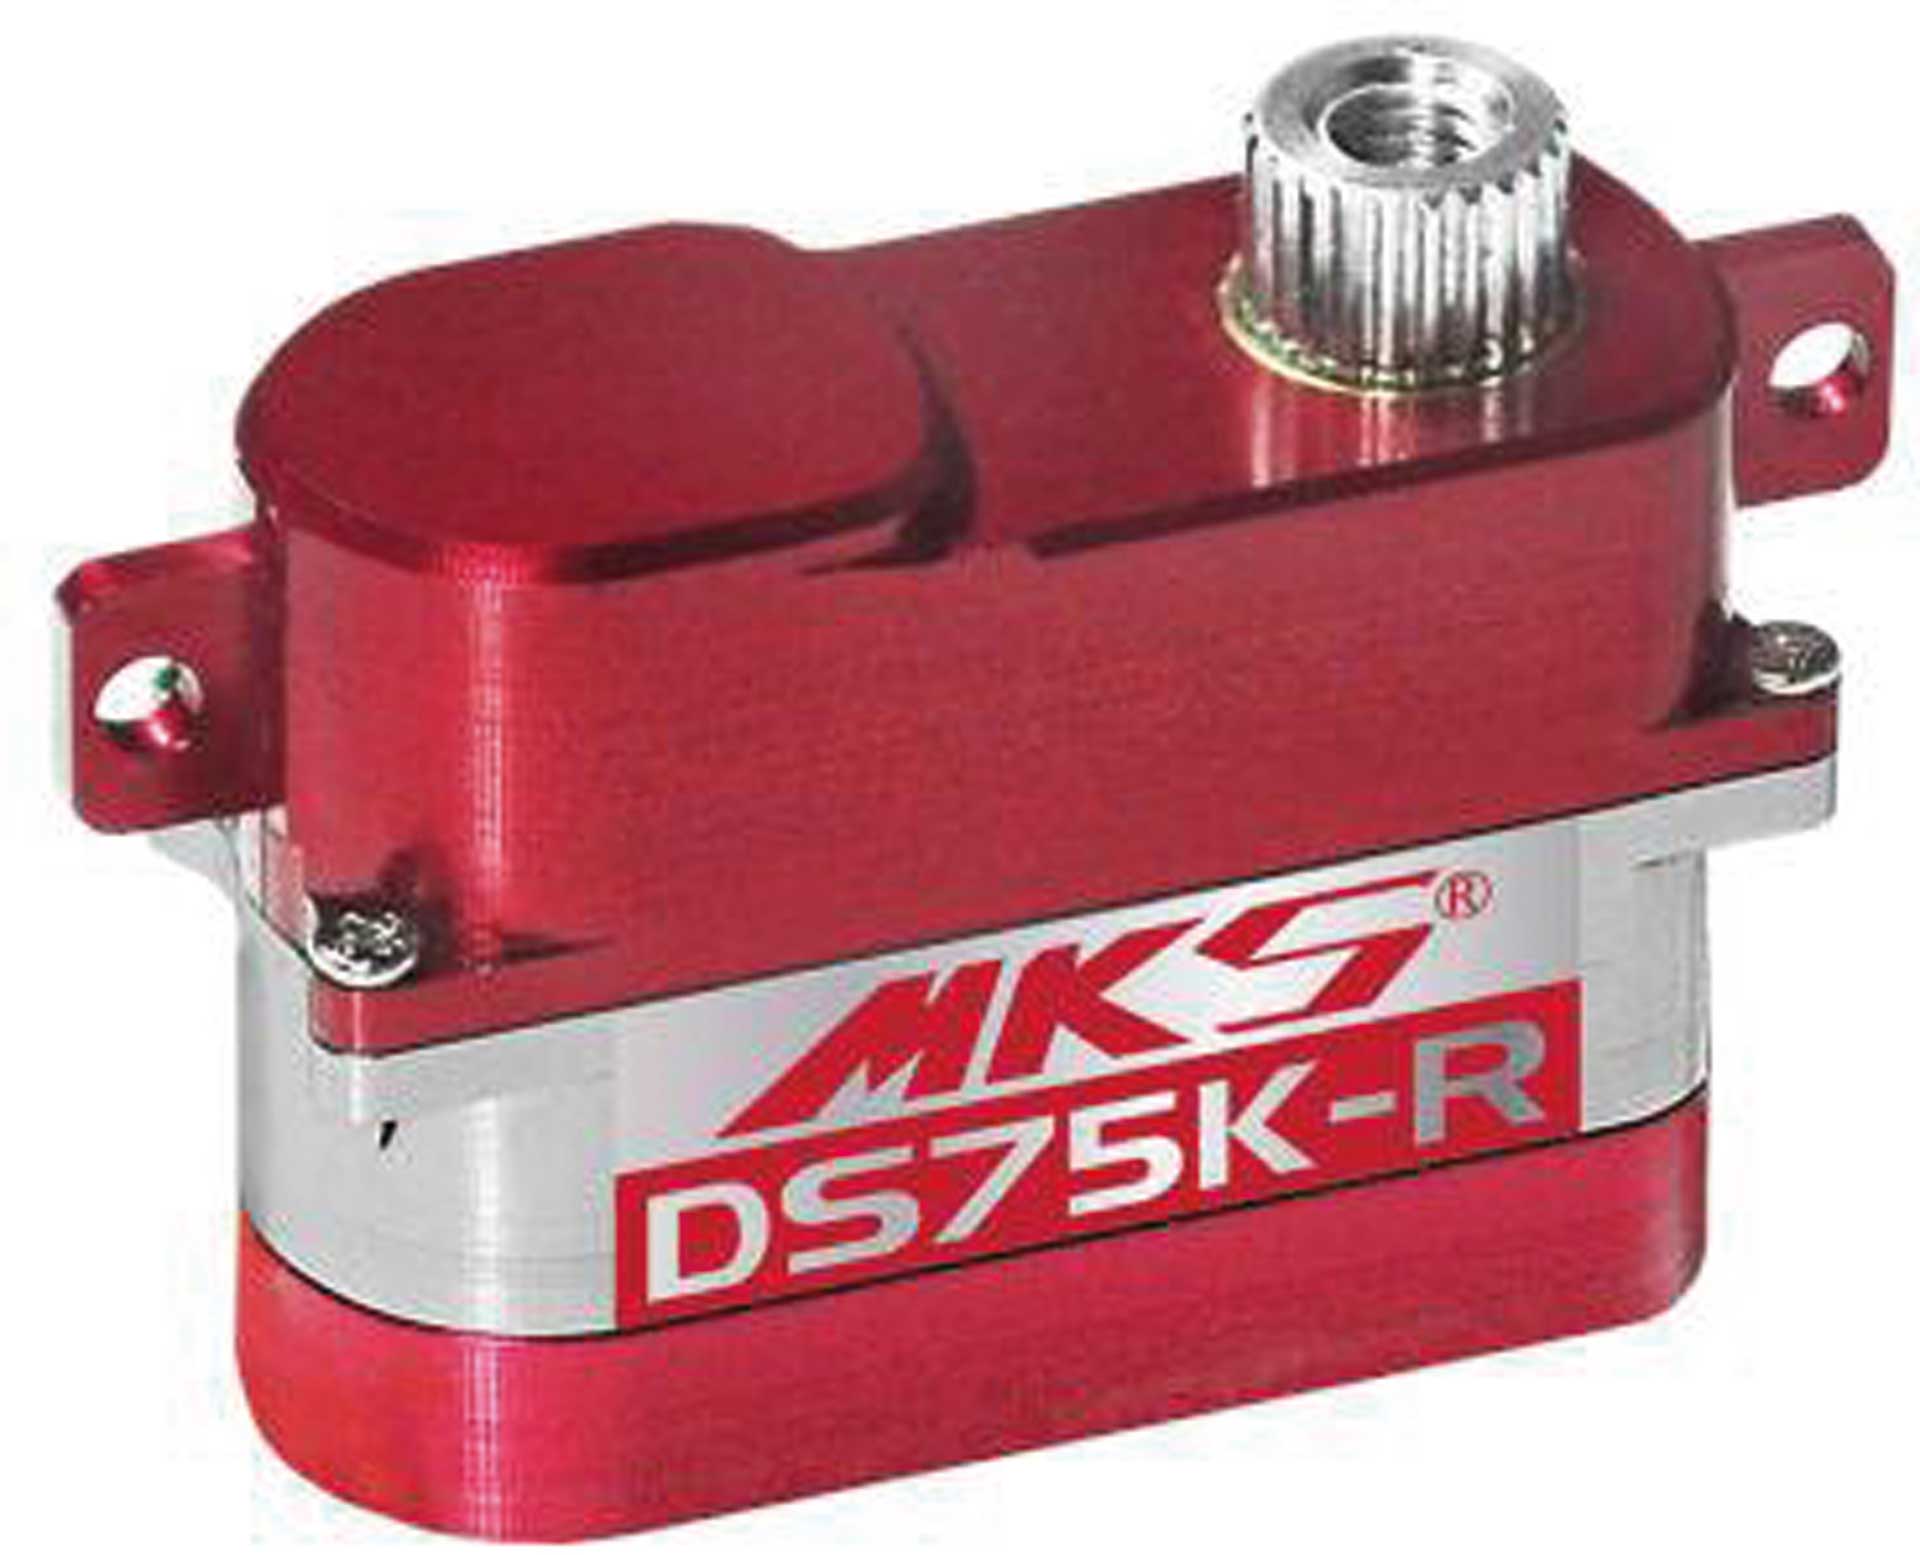 MKS DS75K-R Digital Servo montage horizontal pour DLG / HLG / F3K...